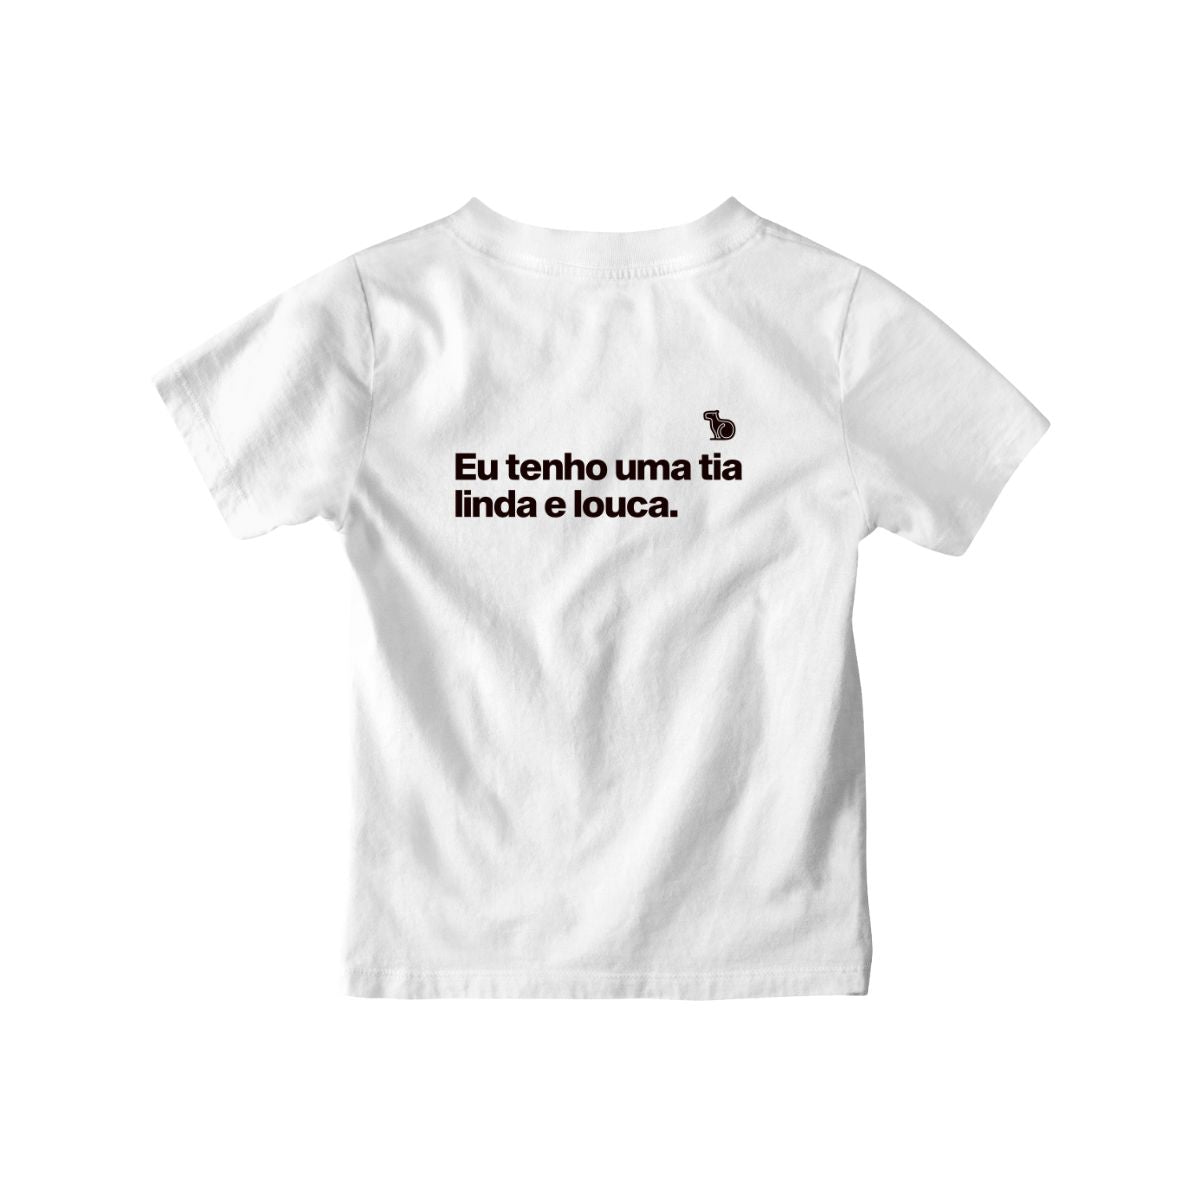 Camiseta infantil com a frase "Eu tenho uma tia linda e louca." na cor branca.